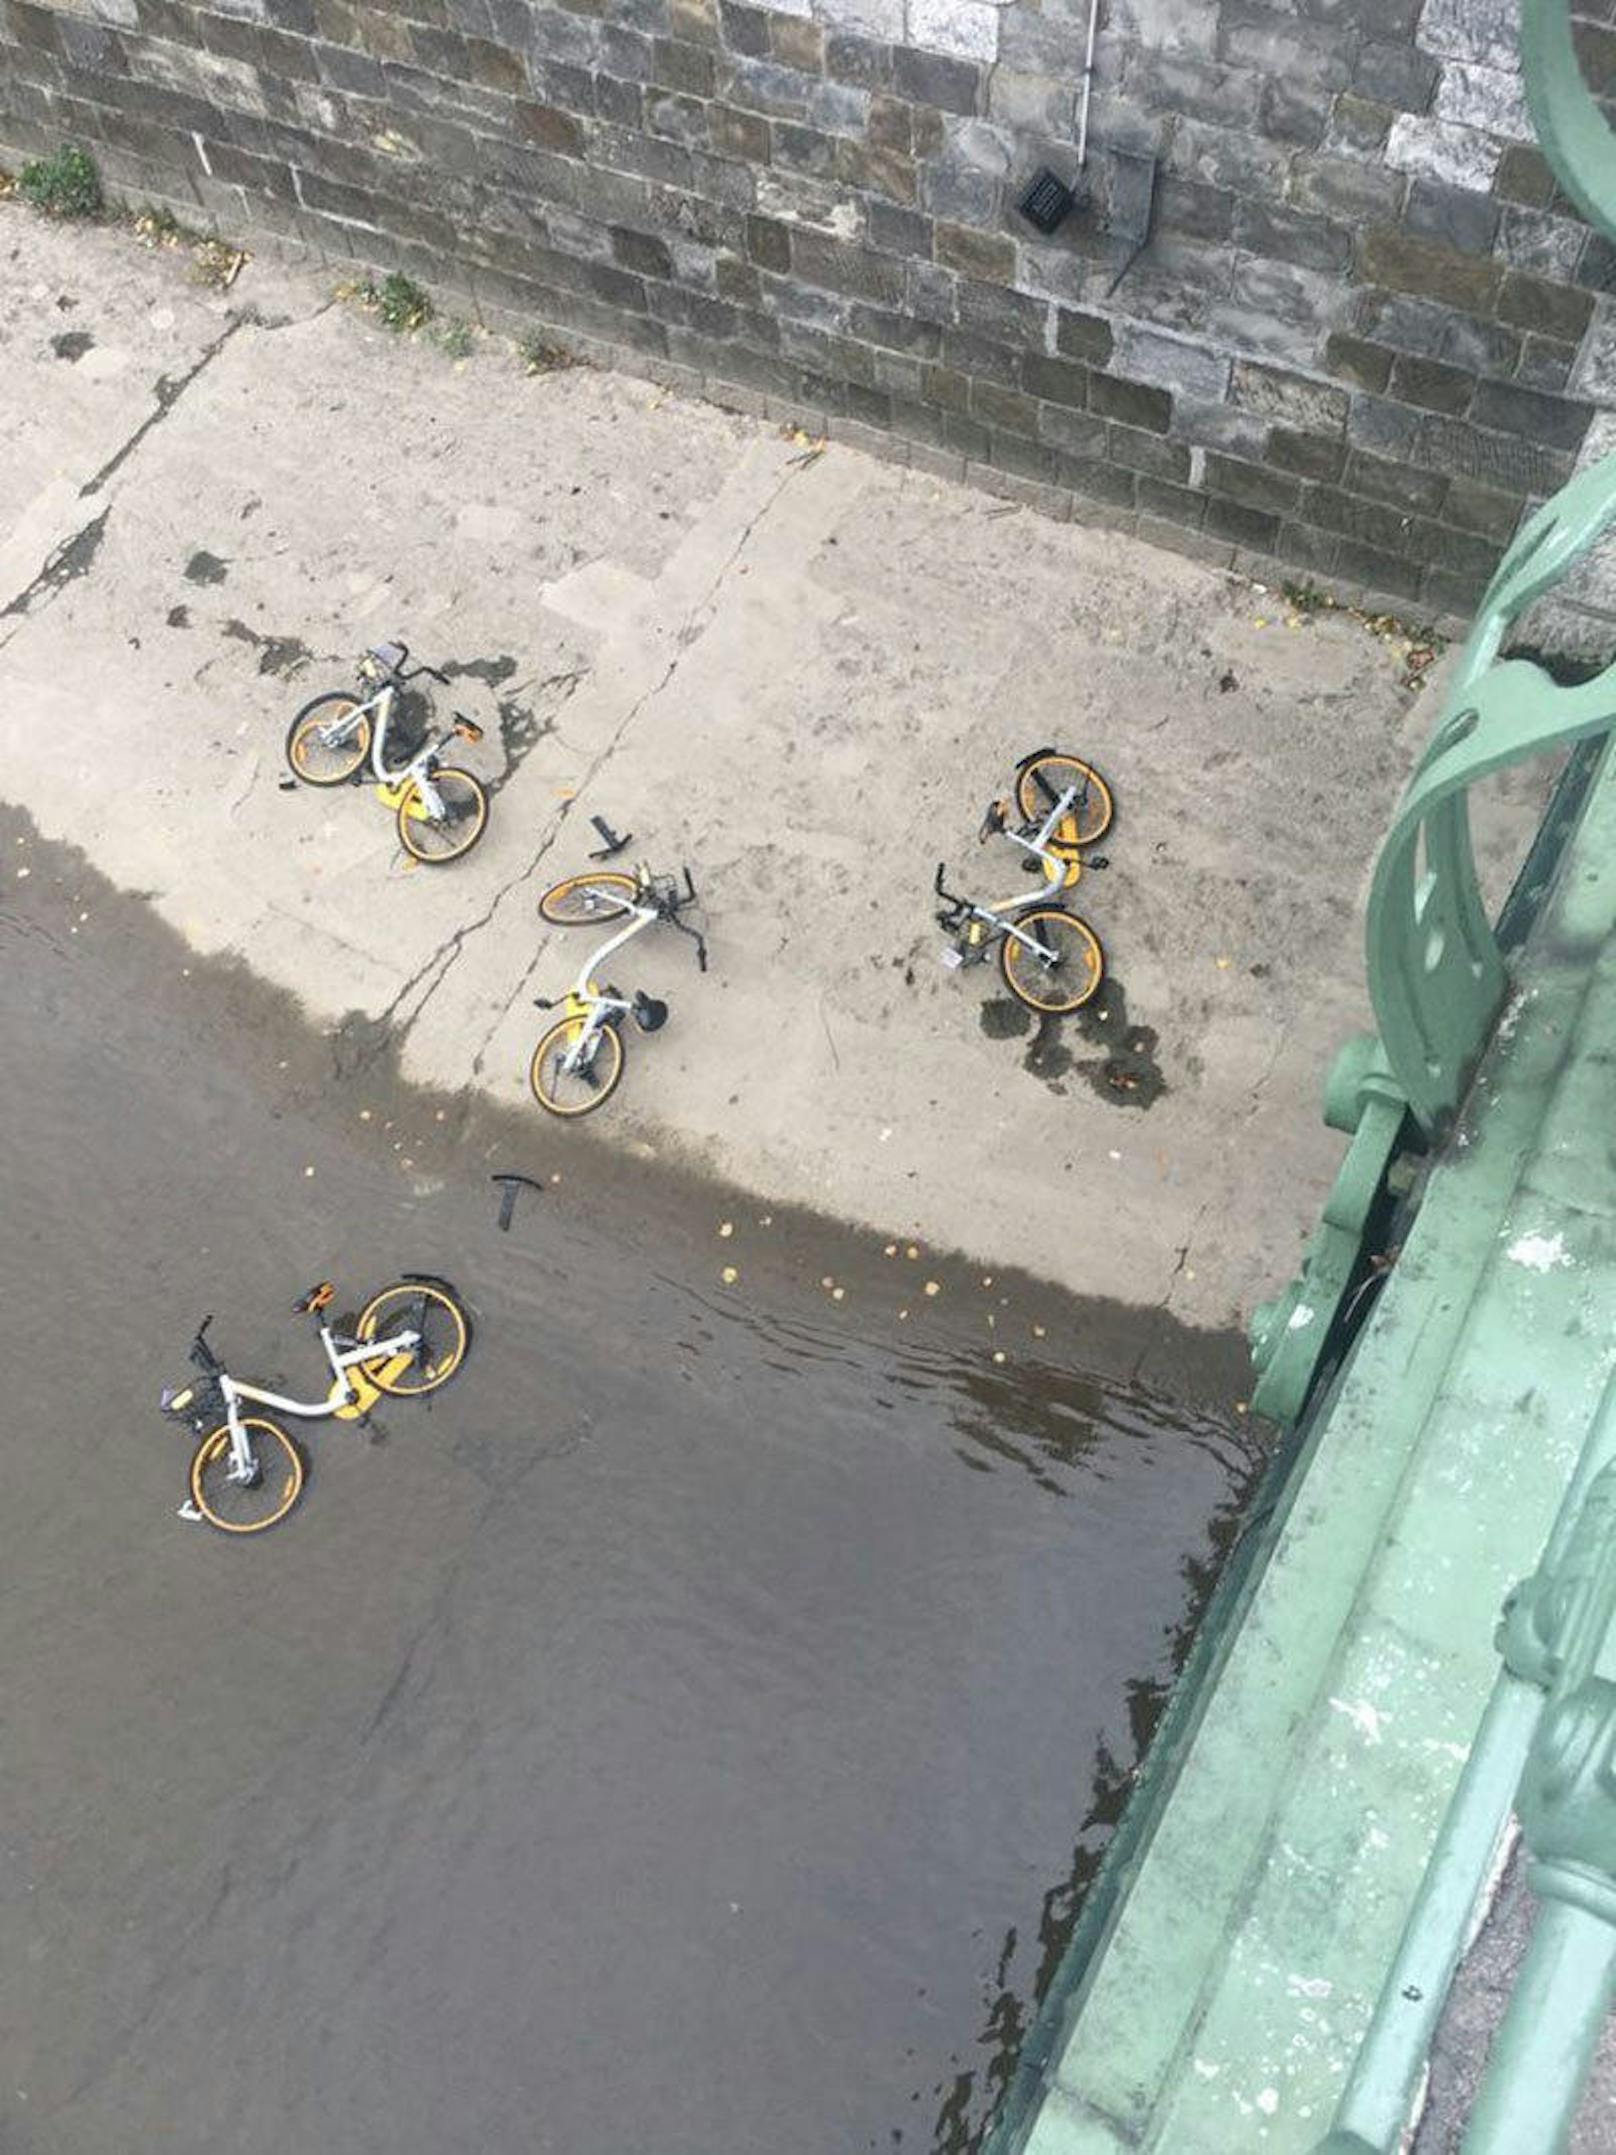 <b>September: Leihräder im Wienfluss</b>
Die Nutzer der chinesischen Bikesharer genießen die Freiheit, das ausgeliehene Rad überall abstellen zu dürfen. So war das aber sicher nicht gedacht! <a href="https://www.heute.at/oesterreich/wien/story/Abstellprobleme-mit-den-Bikesharing-Raedern-56040776">Hier geht's zur Geschichte</a>